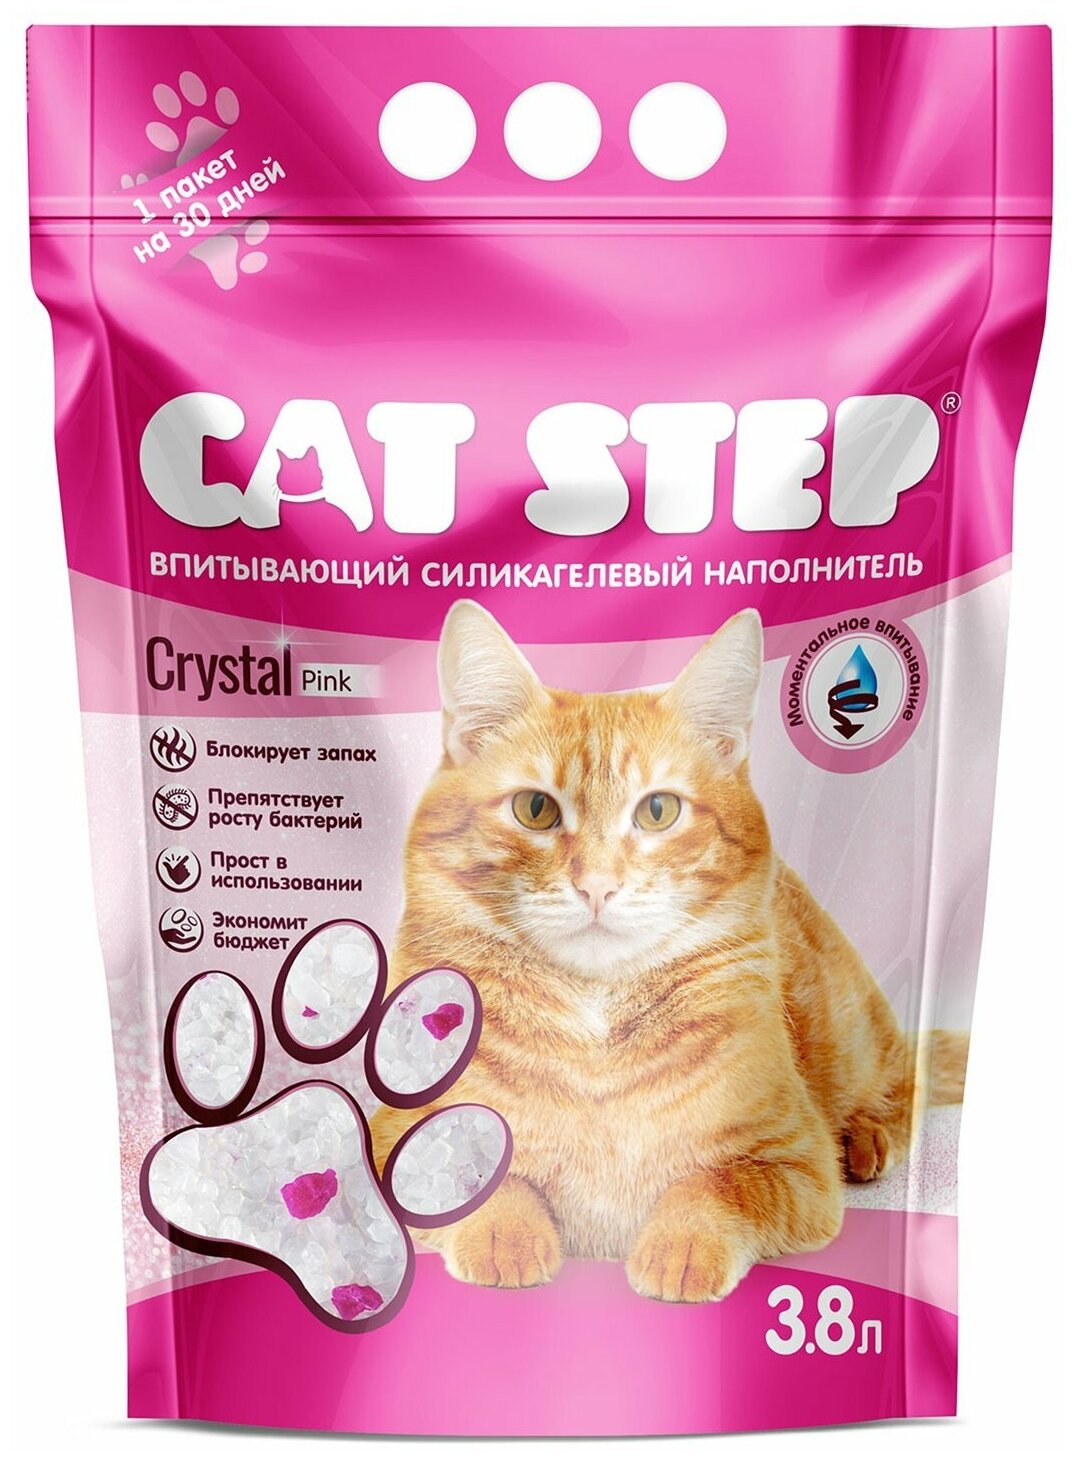 Впитывающий наполнитель Cat Step Arctic Pink, 3.8л, 1 шт.